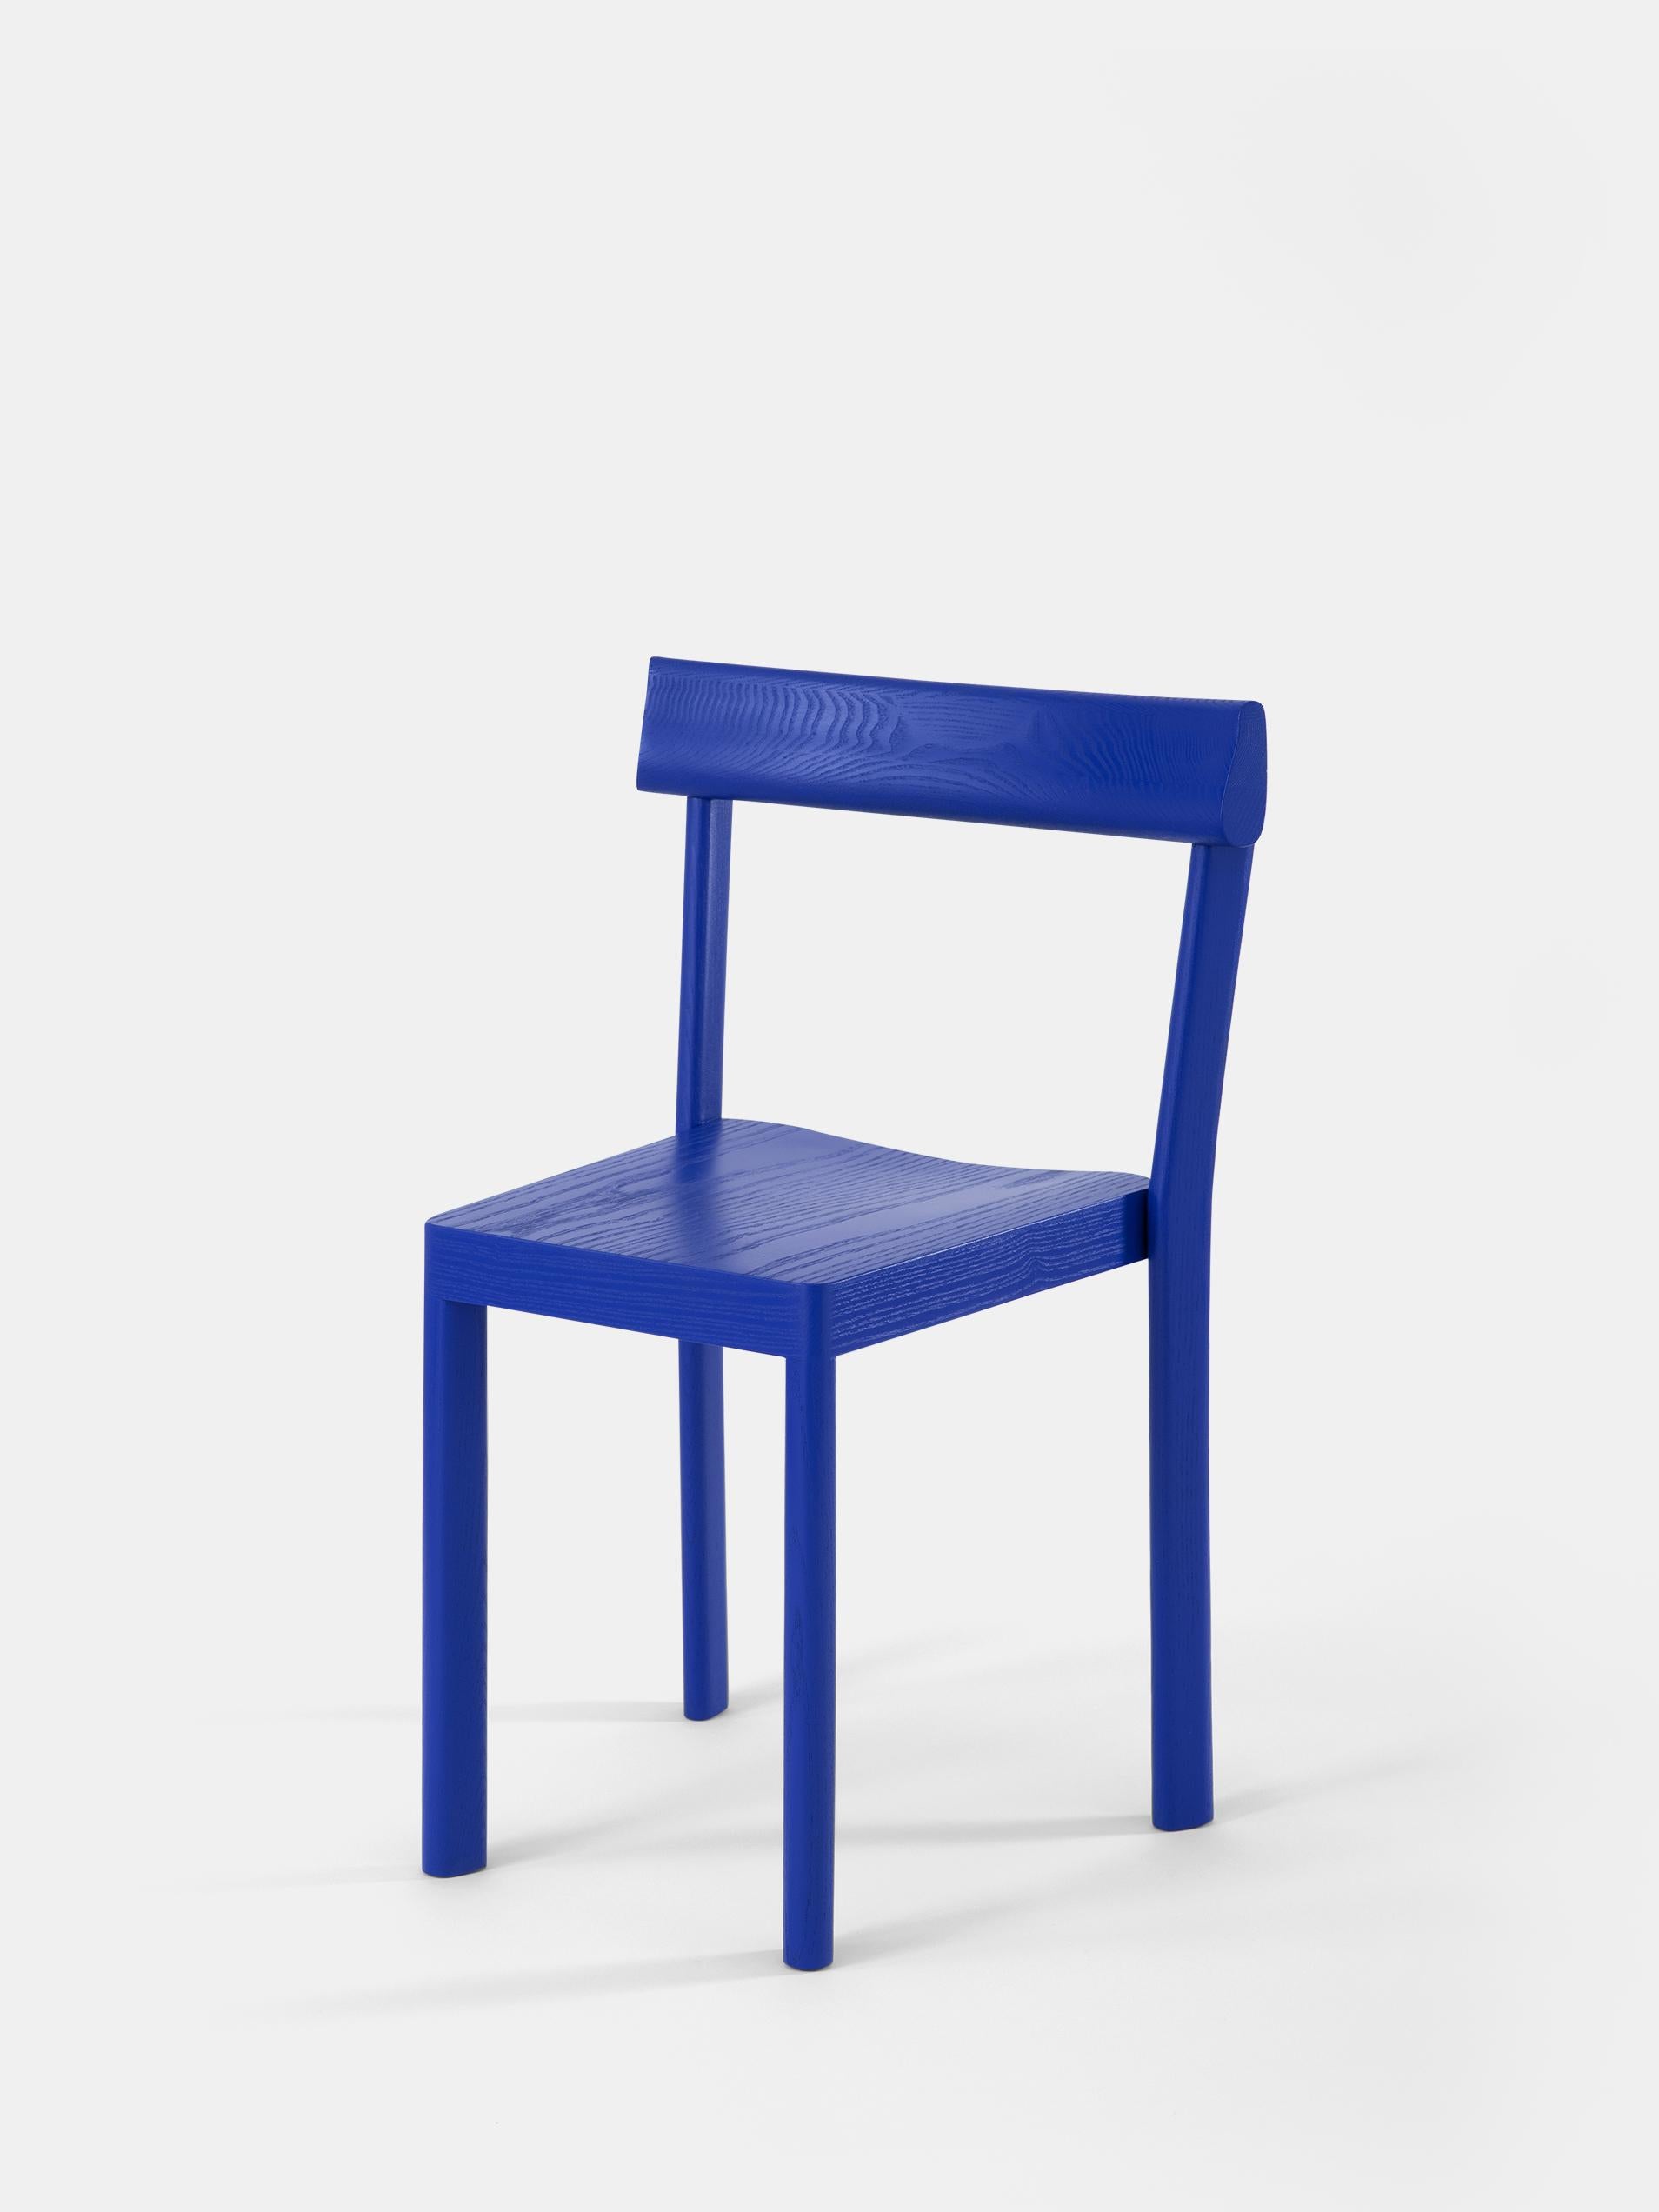 Ensemble de 6 chaises en chêne bleu Galta par Kann Design
Dimensions : D 43 x L 51 x H 80 cm.
MATERIAL : Chêne laqué bleu.
Disponible dans d'autres finitions.

Avec la Galta, SCMP Design/One repense la chaise de bistrot classique. Le résultat est